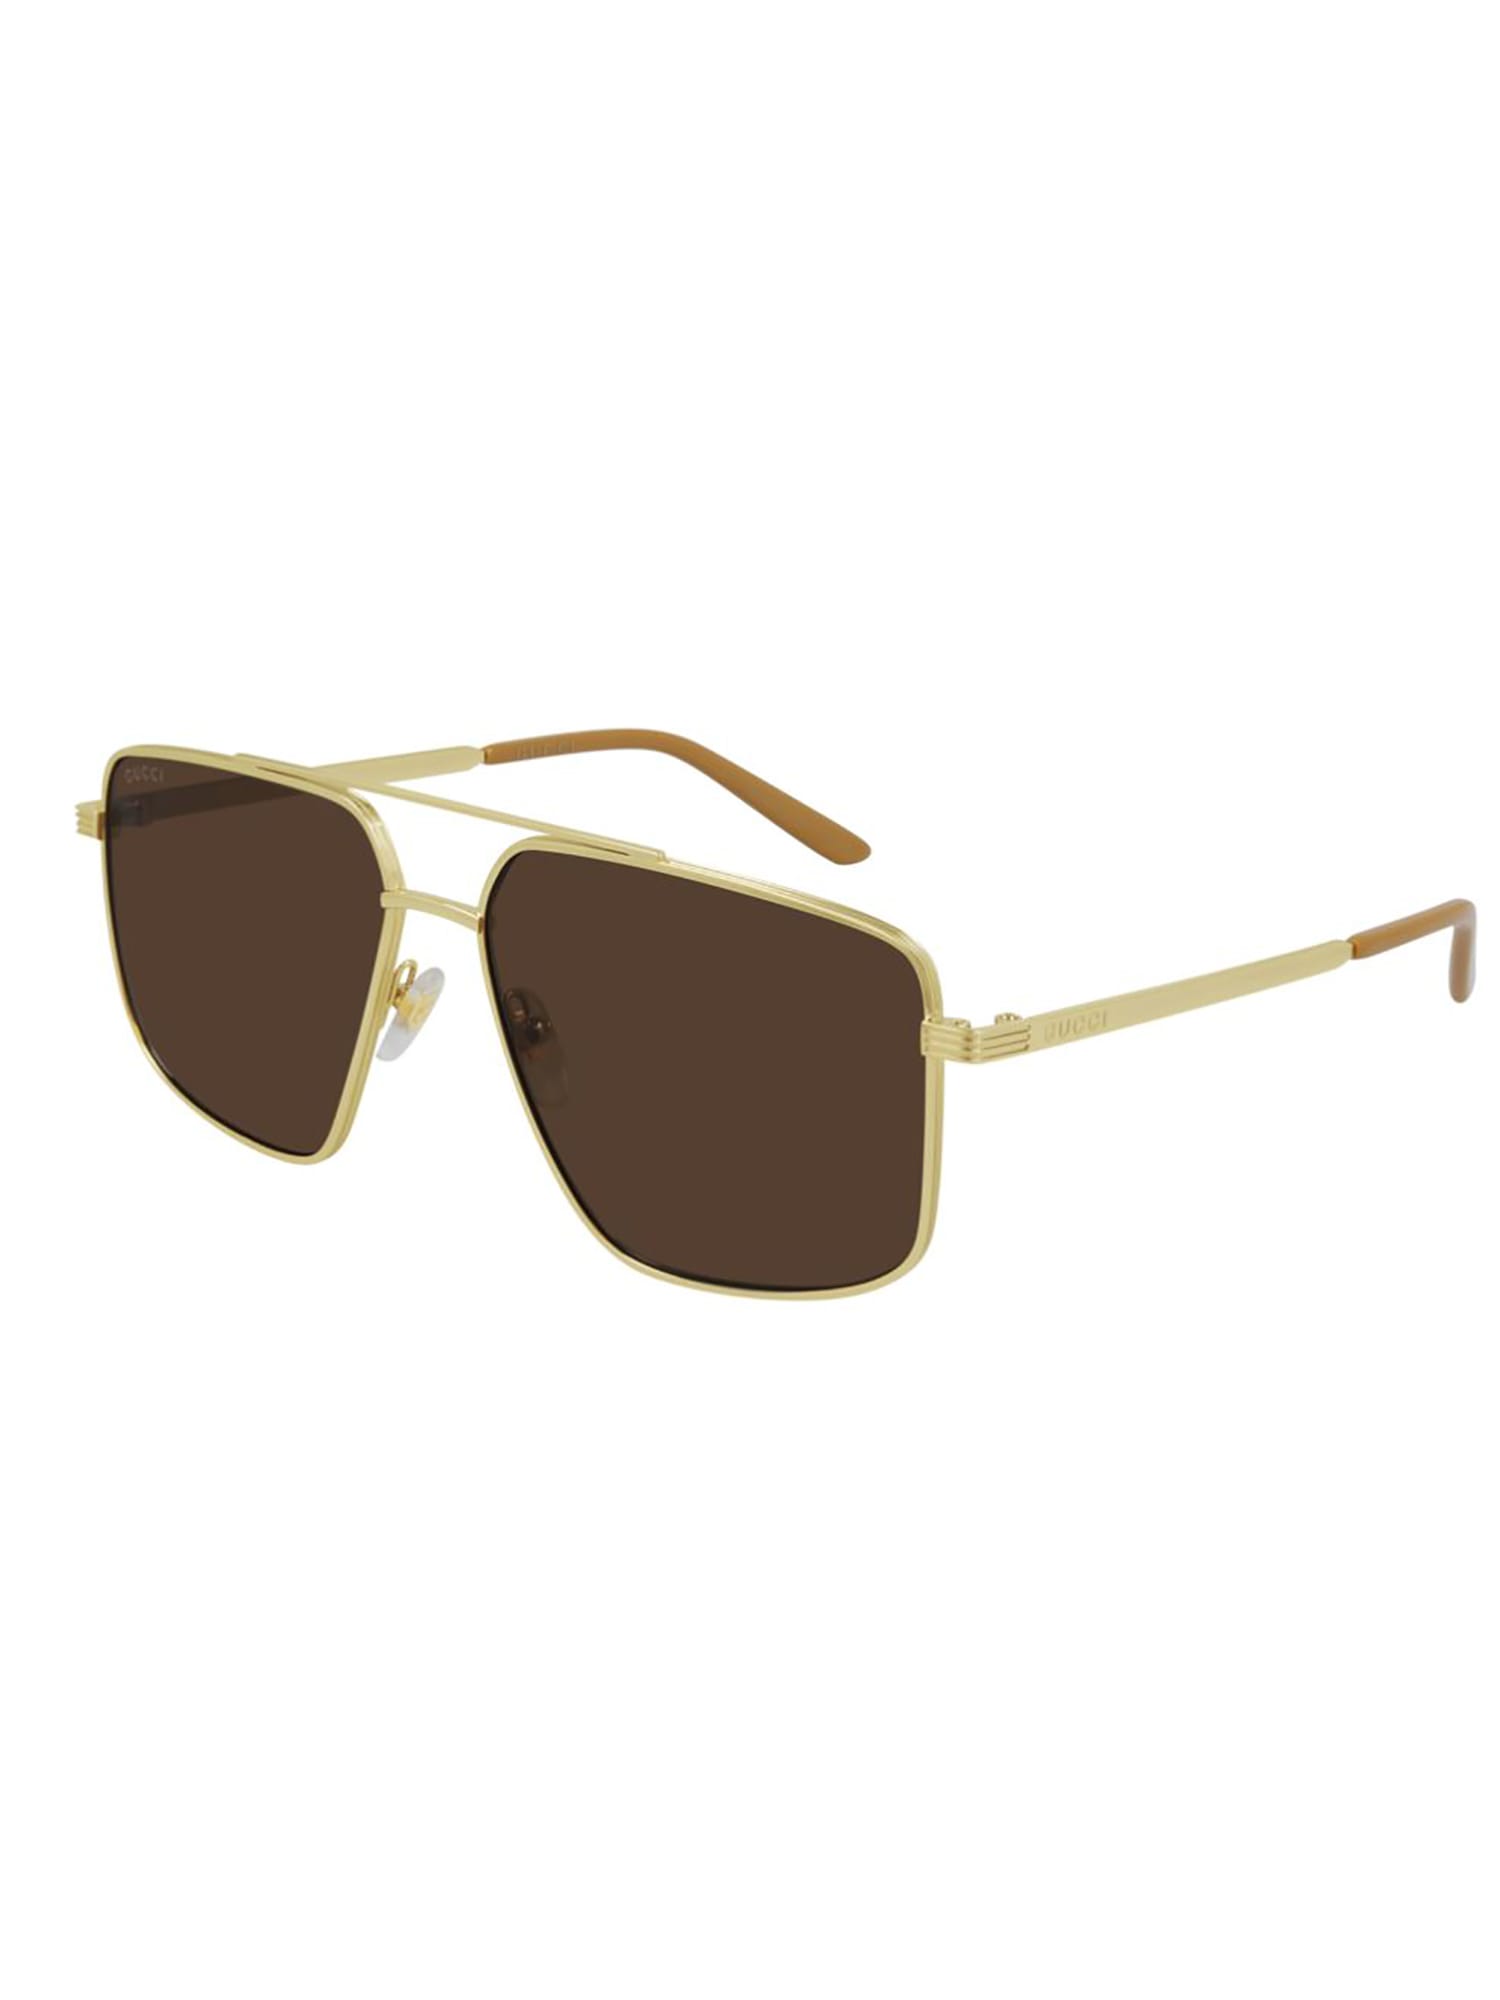 Gucci GG0941S Sunglasses